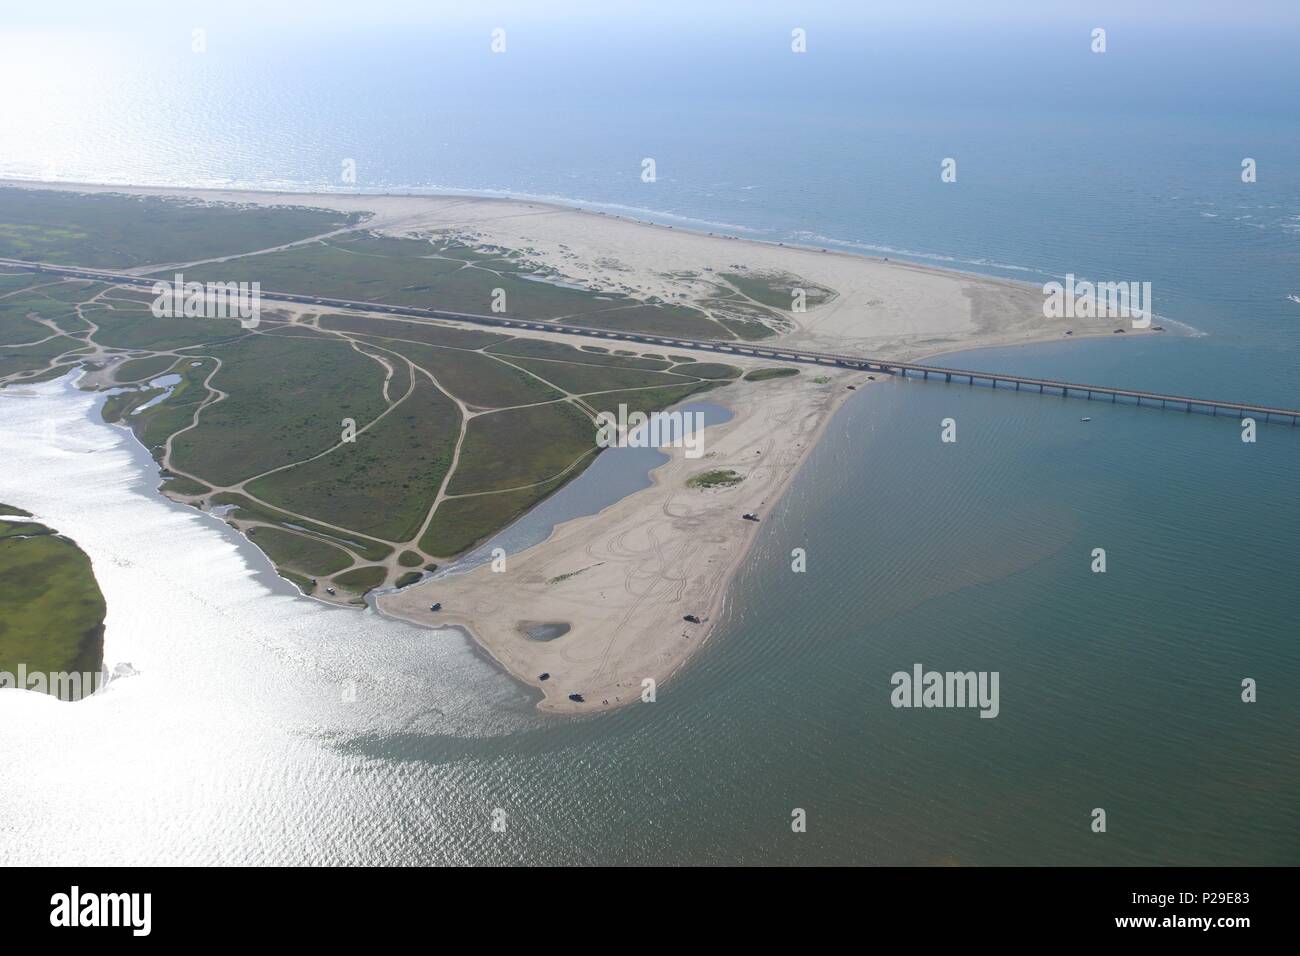 Vue aérienne de la côte du golfe du Texas, Galveston Island,USA. Haze en raison de conditions climatiques chaudes. Vue sur San Luis, San Luis Col et pointe ouest. Banque D'Images